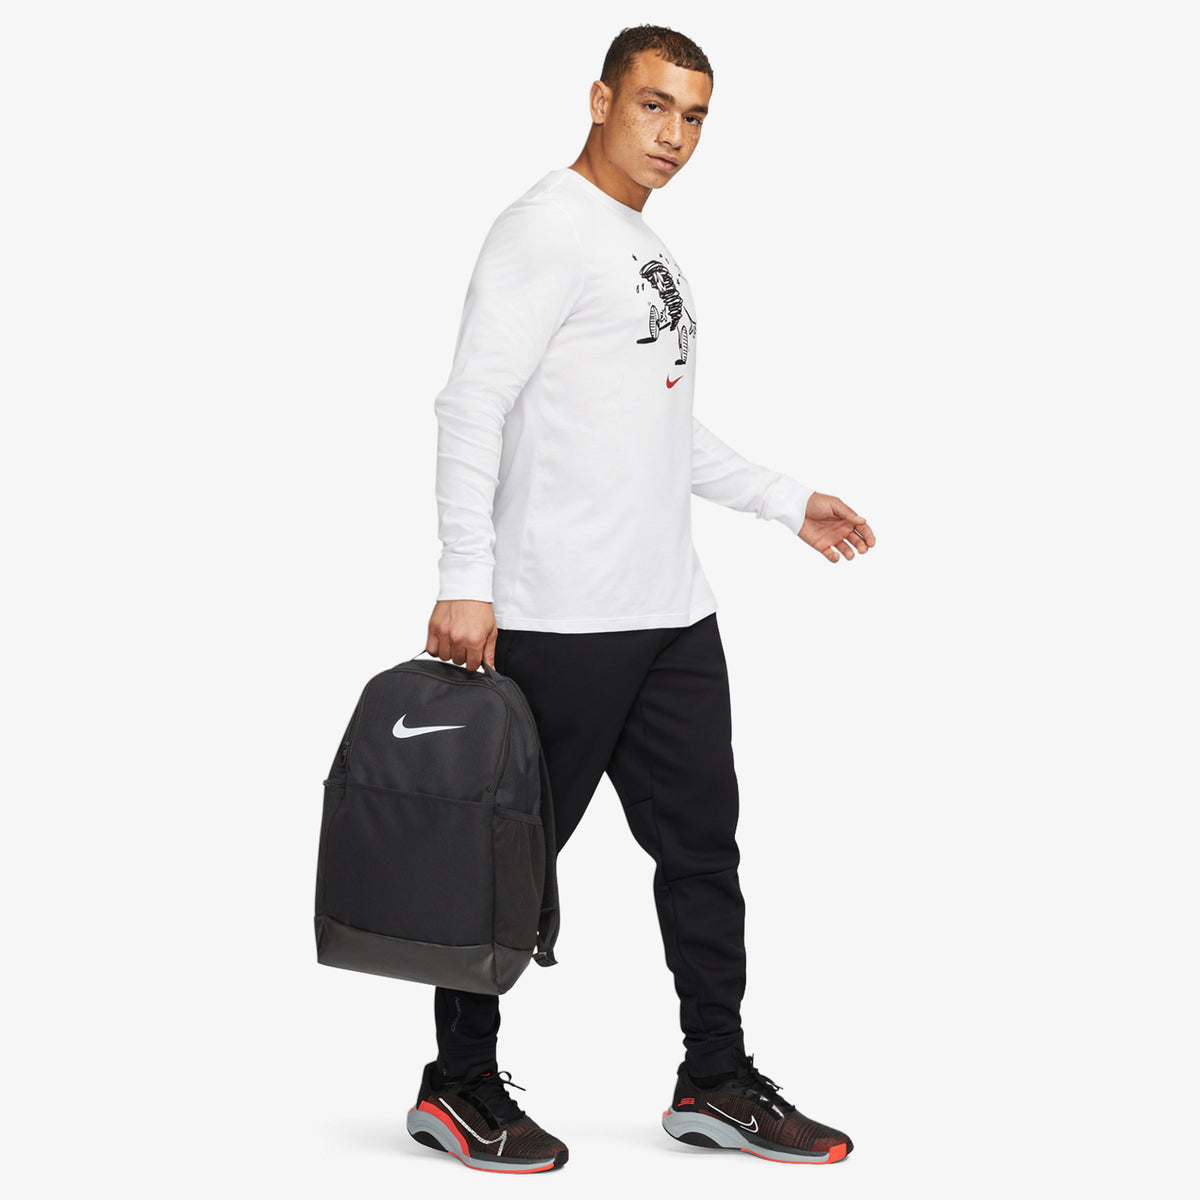 Nike Brasilia 9.5 Training Backpack - Black